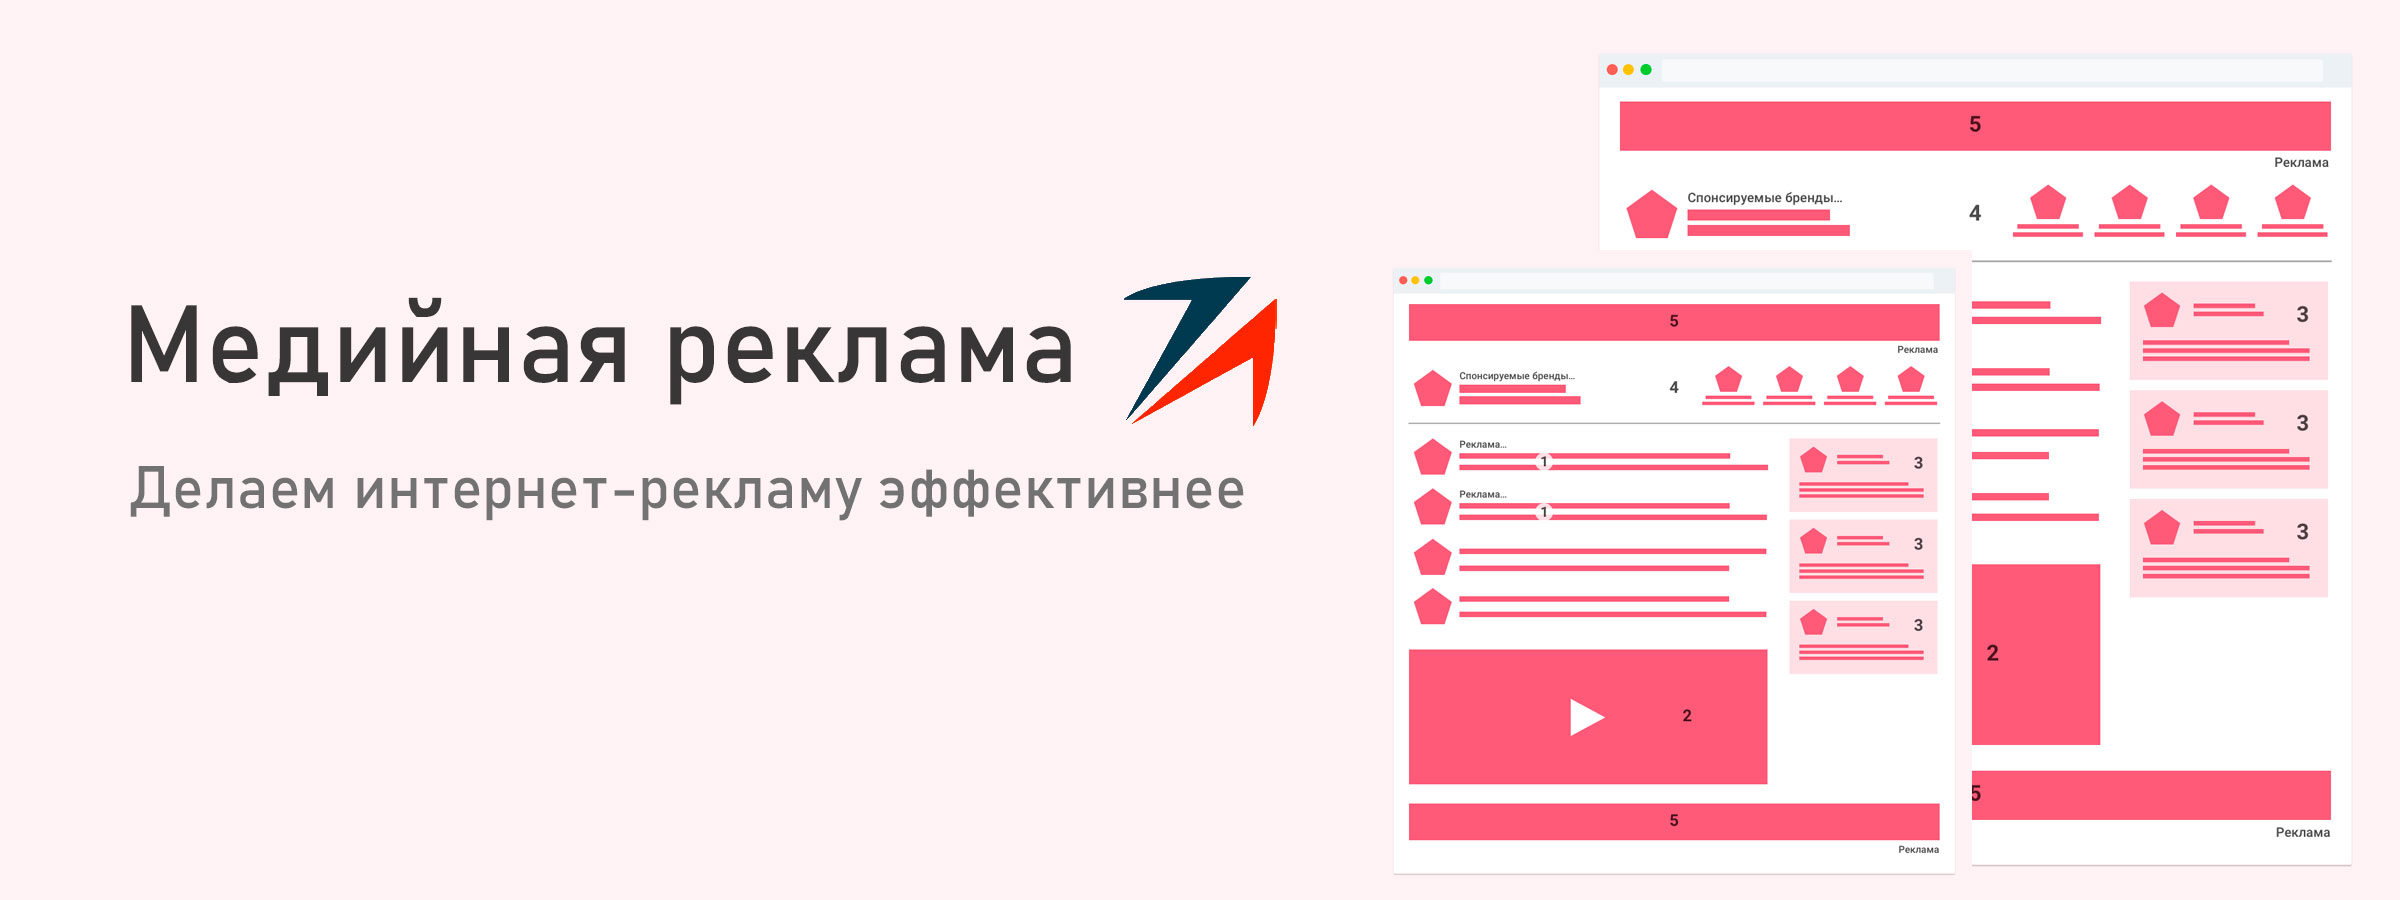 Publicitate afișată Google, Yandex